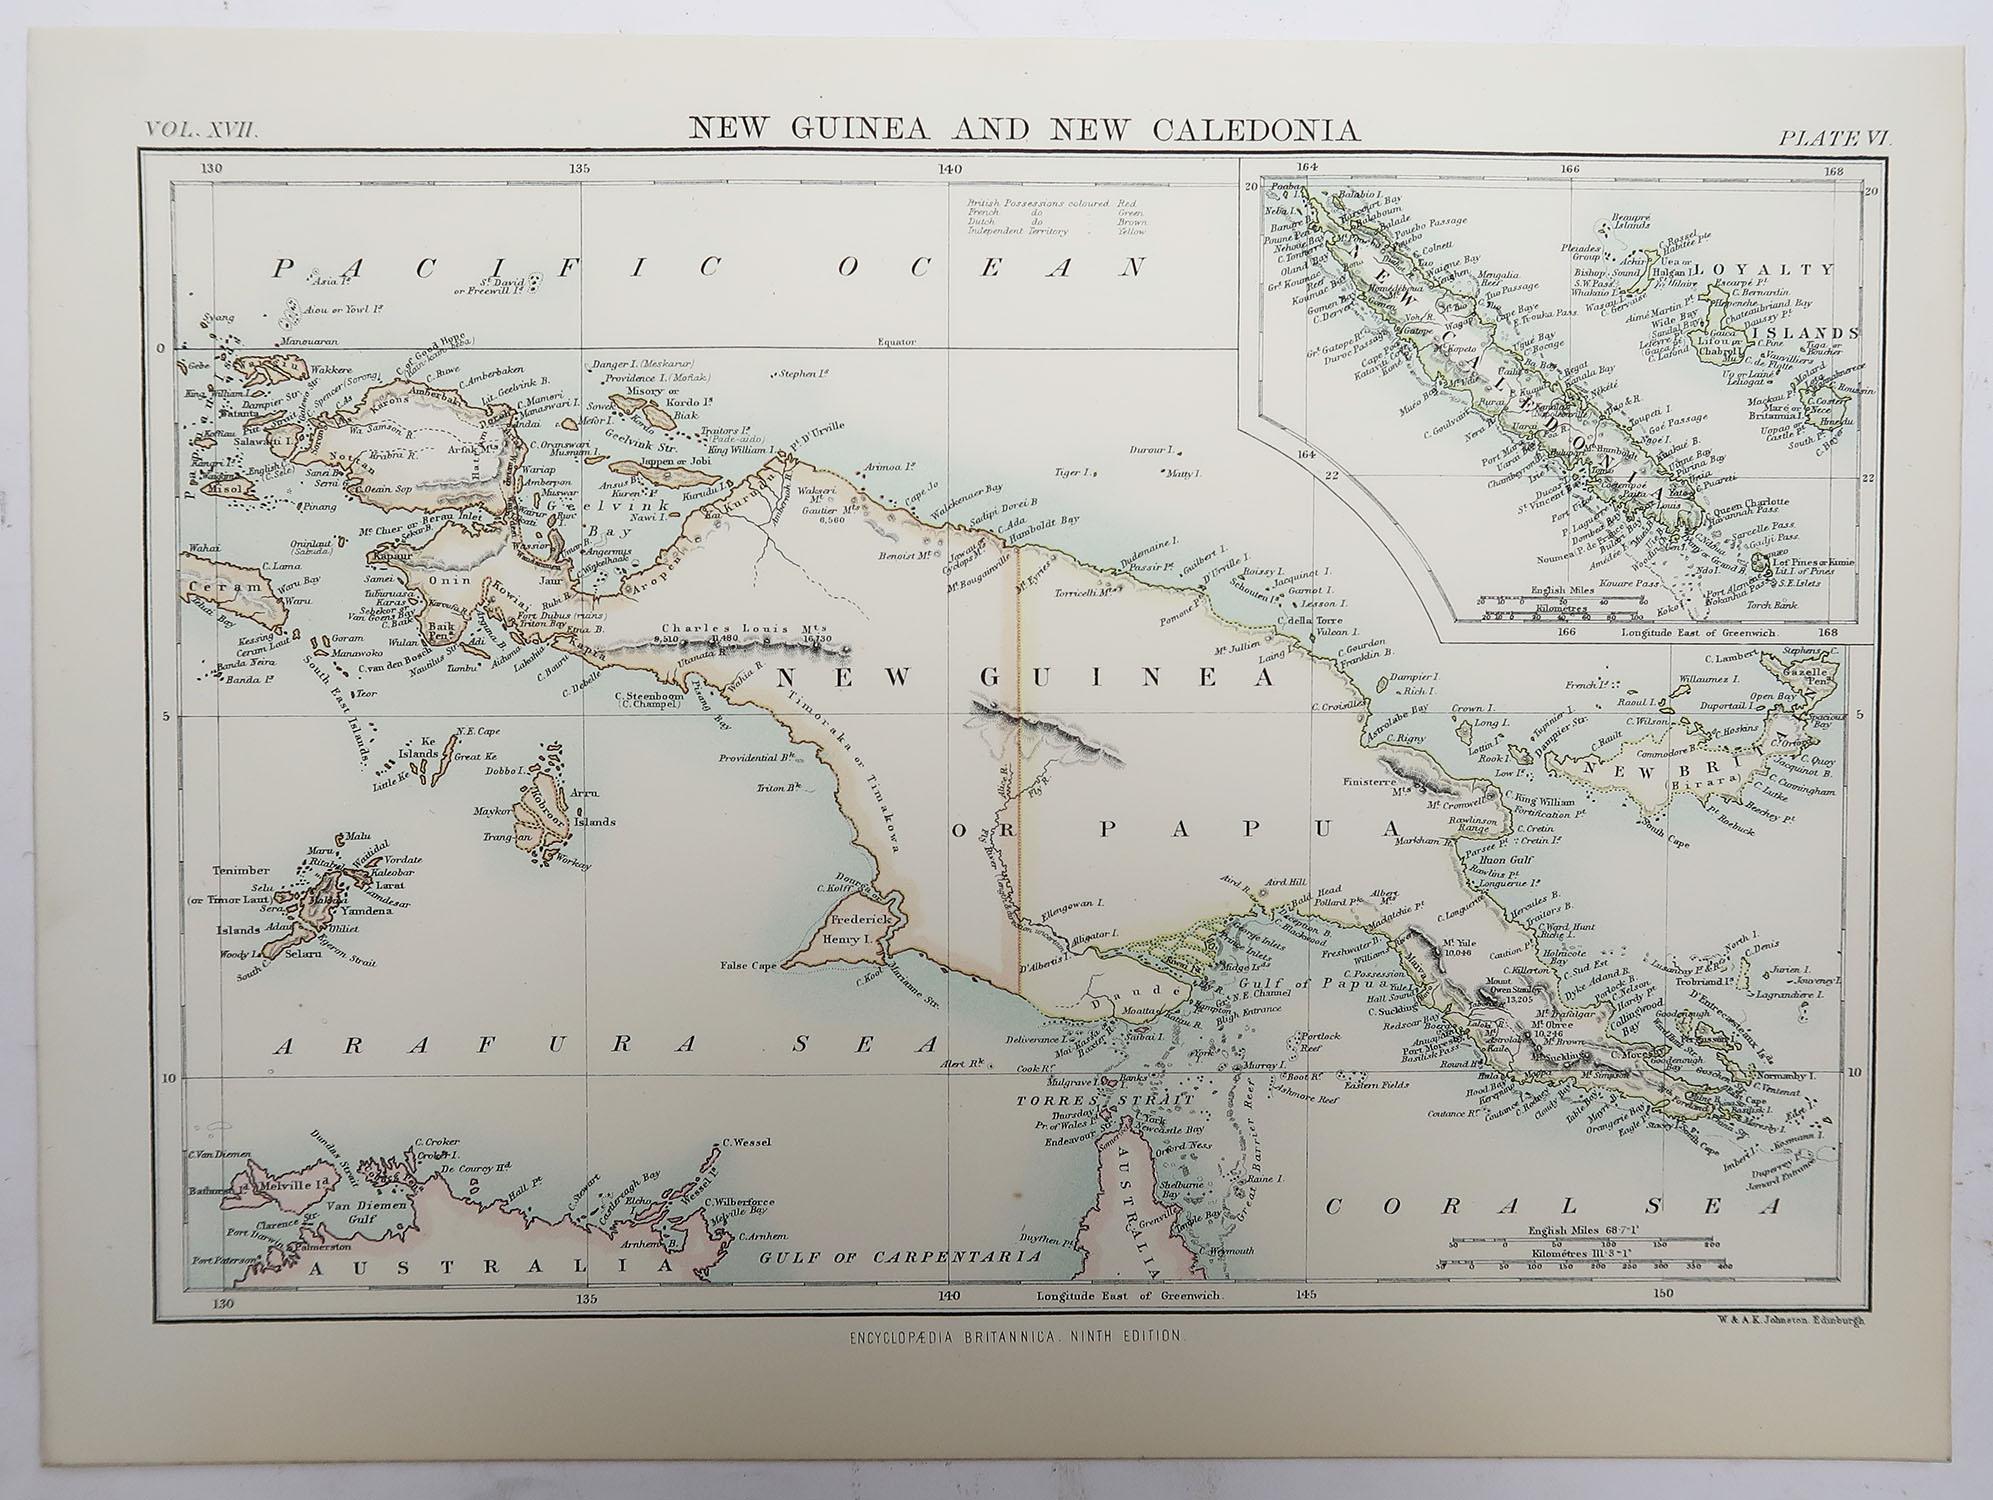 Scottish Original Antique Map of Papua New Guinea, 1889